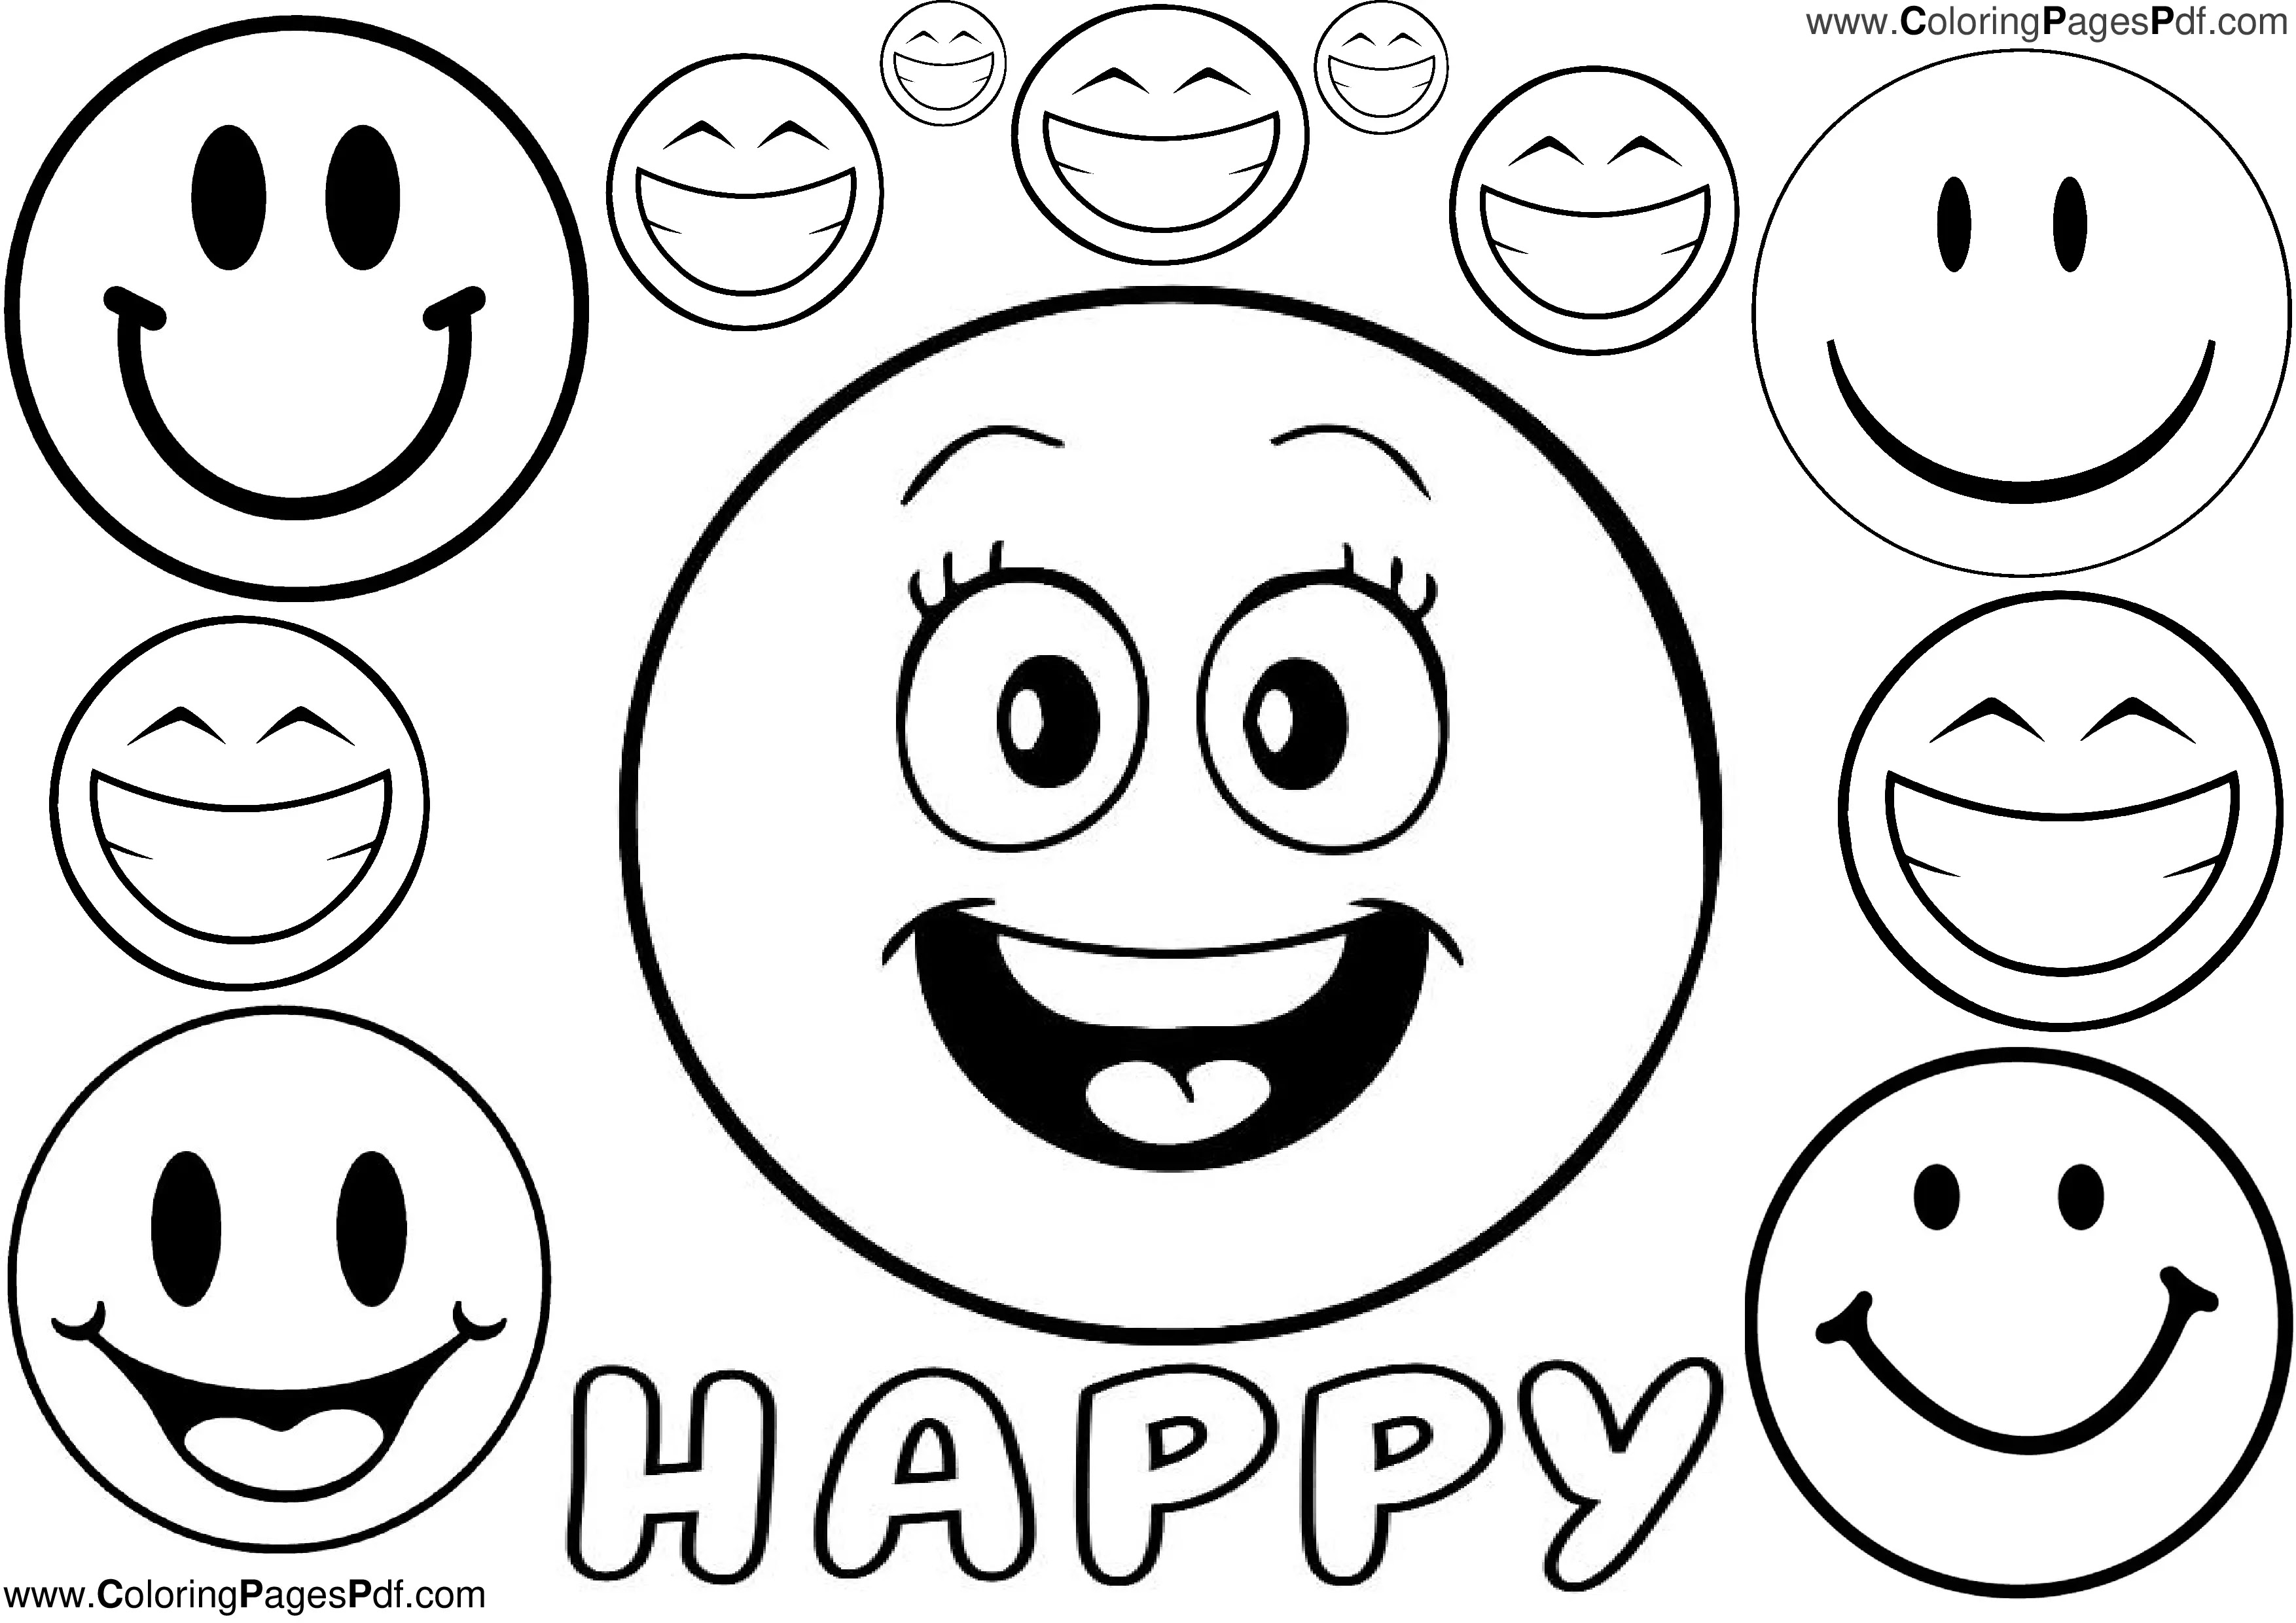 Happy emoji coloring pages